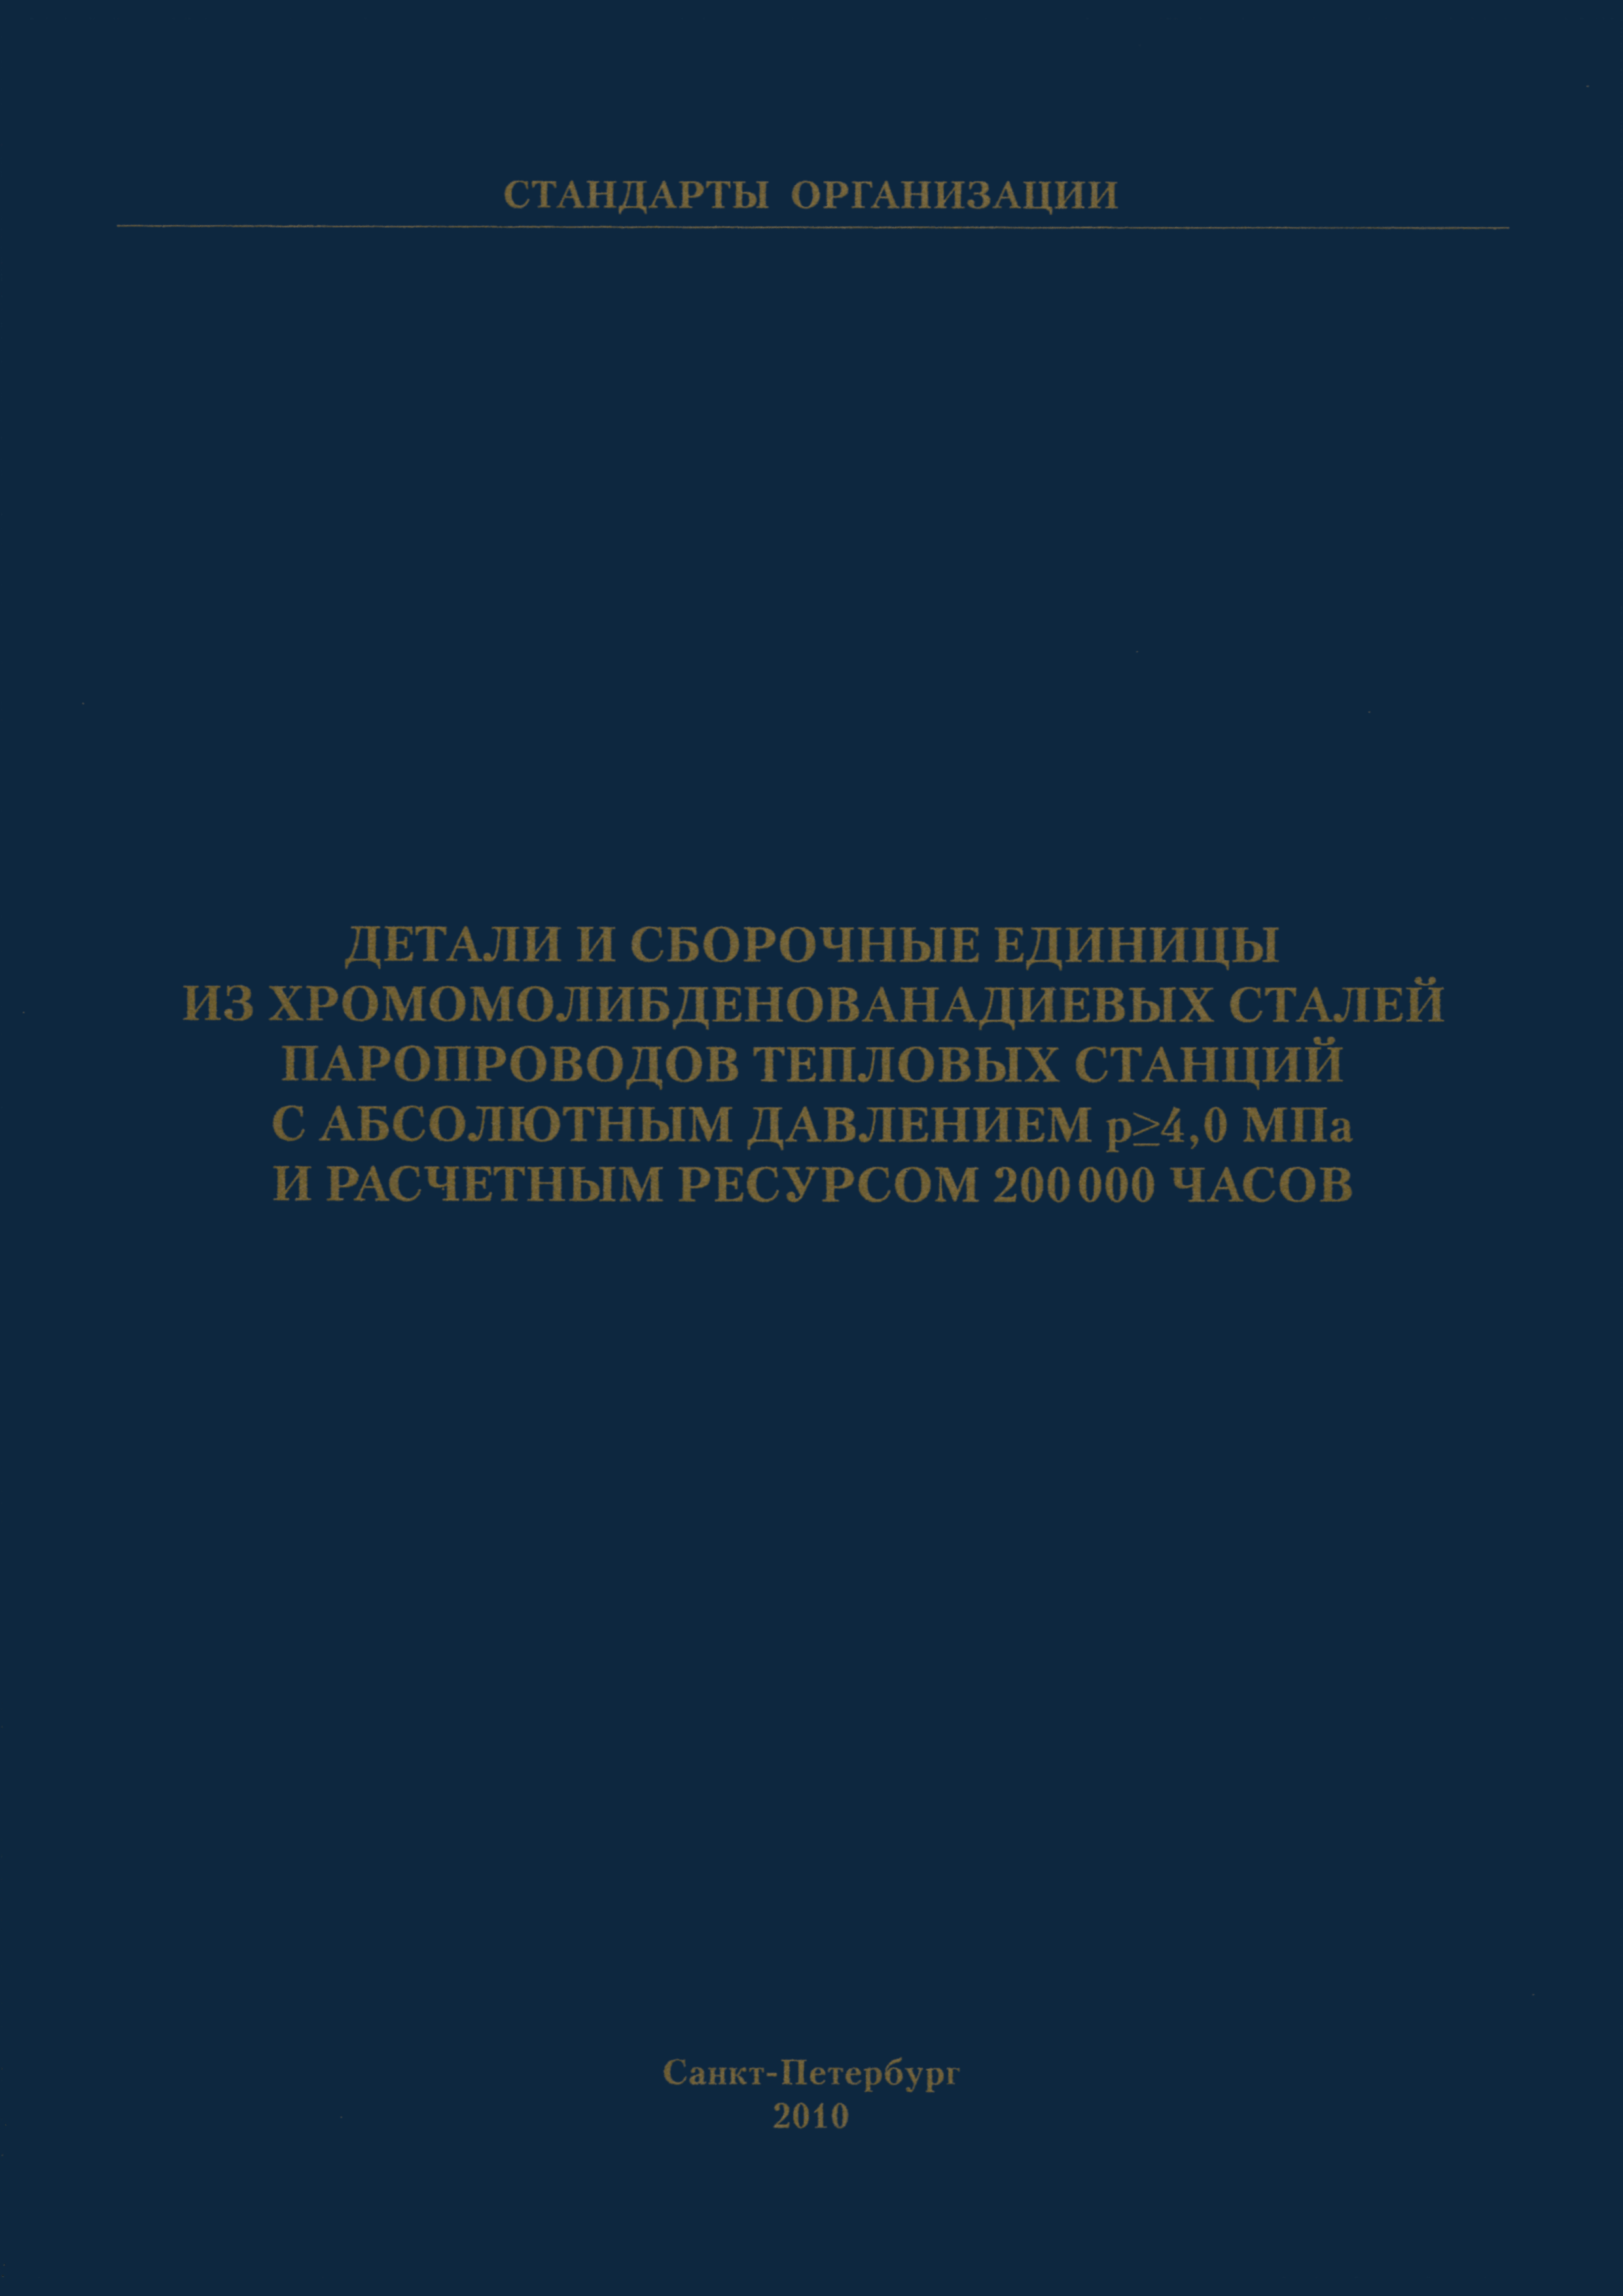 СТО ЦКТИ 530.02-2009